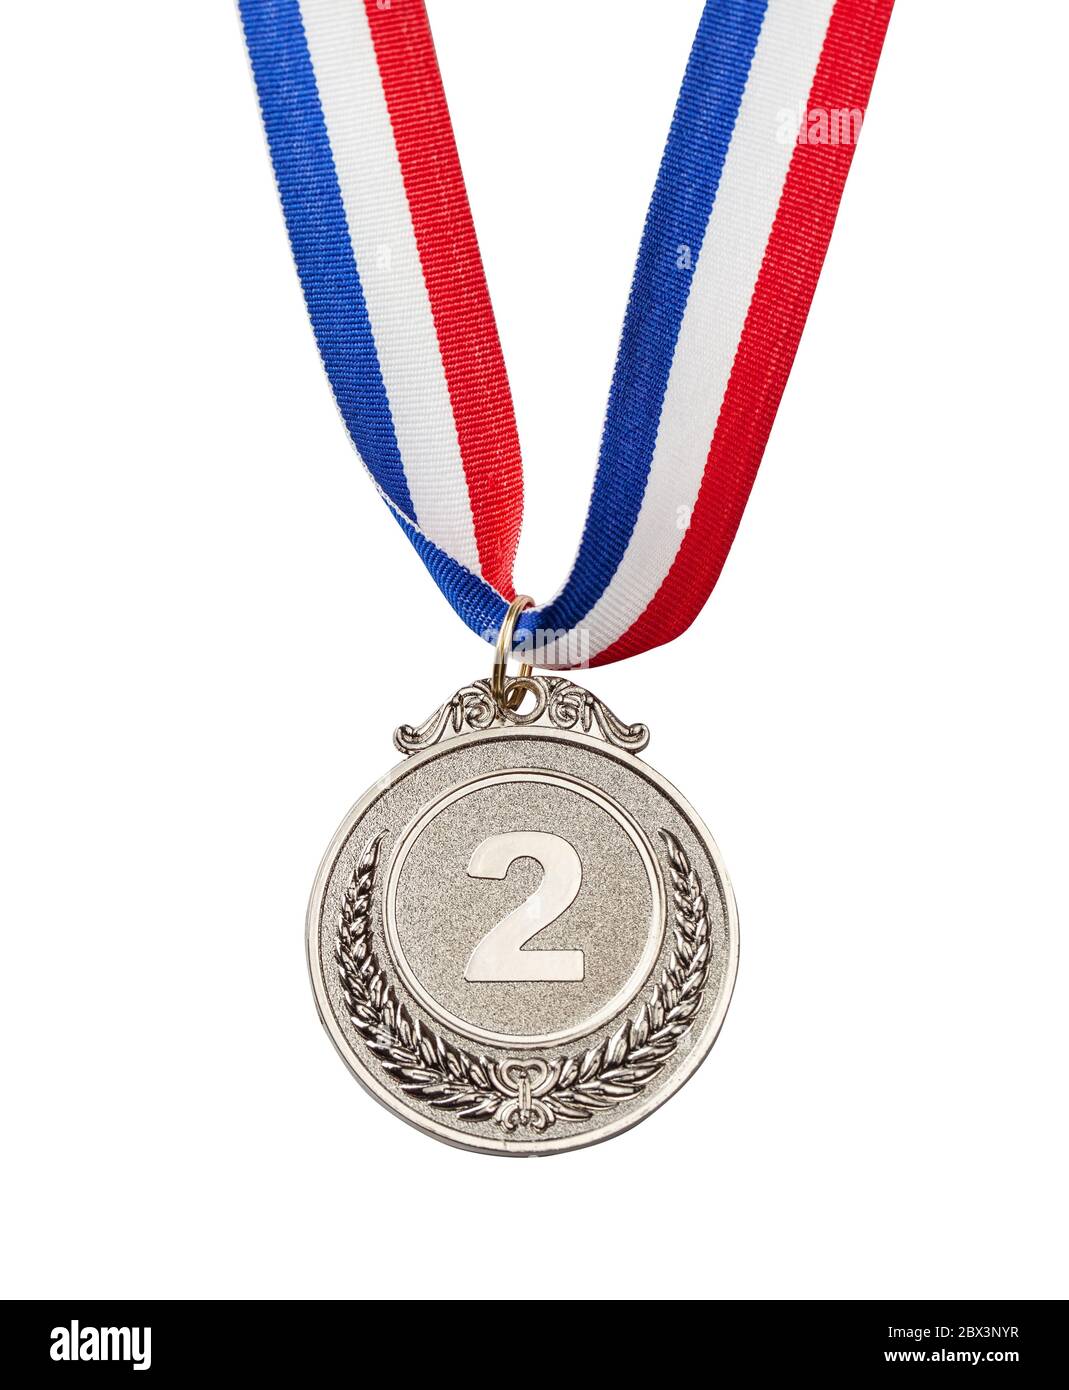 Silbermedaille für den zweiten Platz. Silber Award mit der Nummer zwei. Isoliert auf weißem Hintergrund. Stockfoto